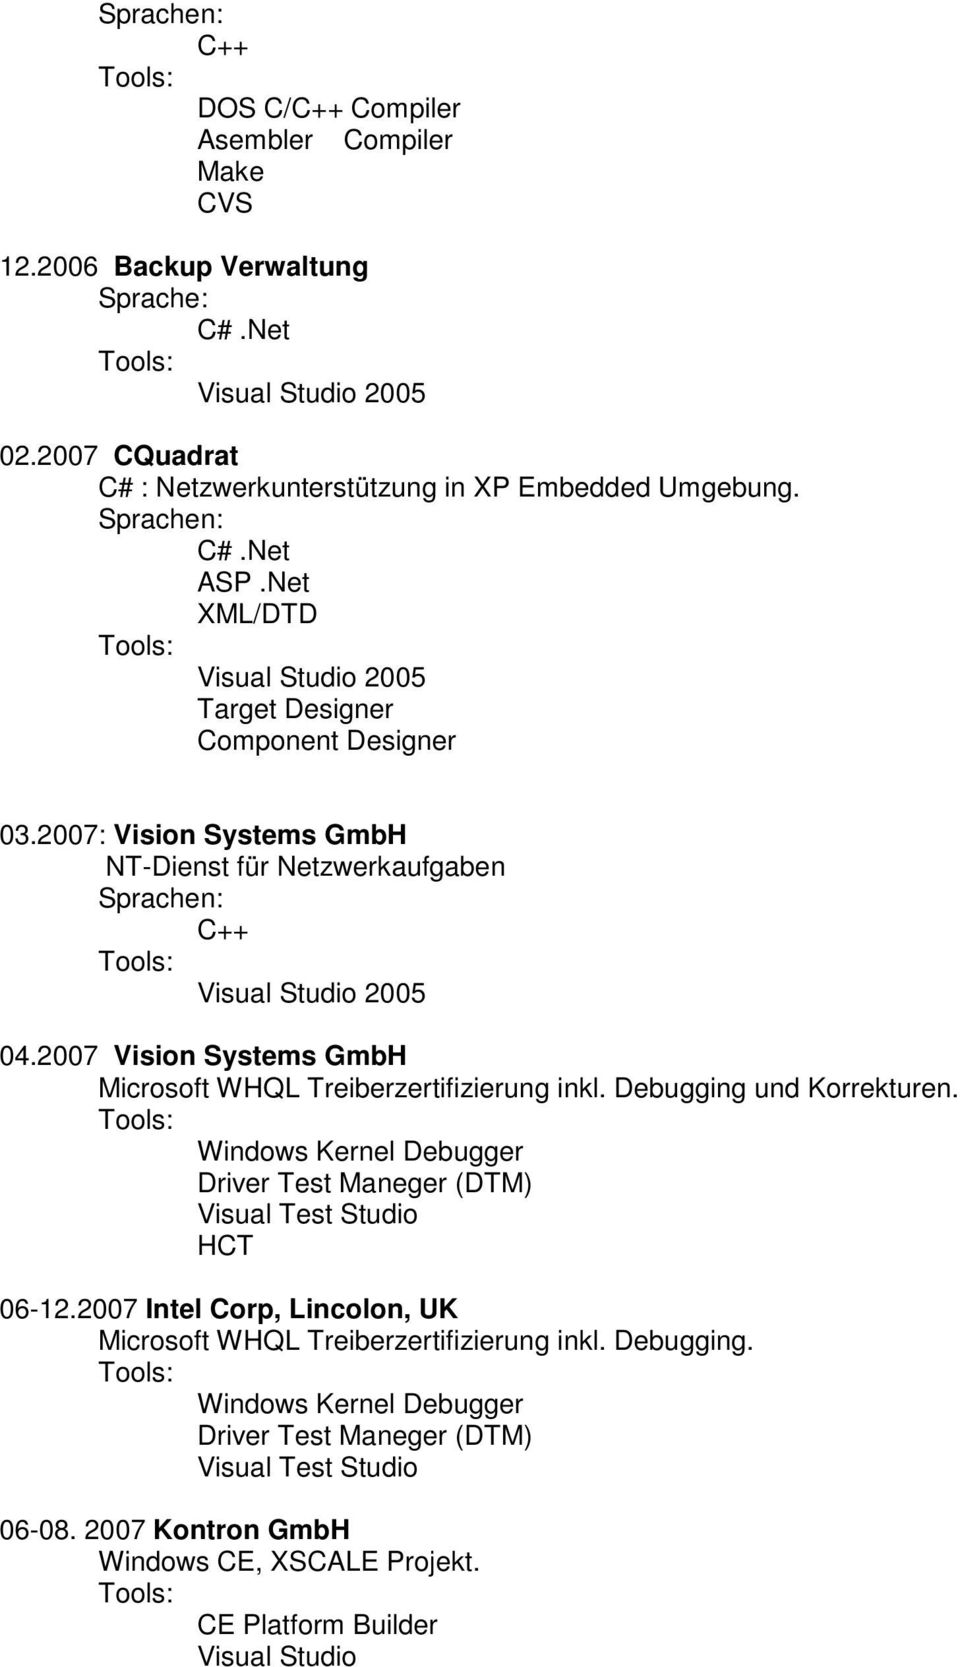 2007 Vision Systems GmbH Microsoft WHQL Treiberzertifizierung inkl. Debugging und Korrekturen.